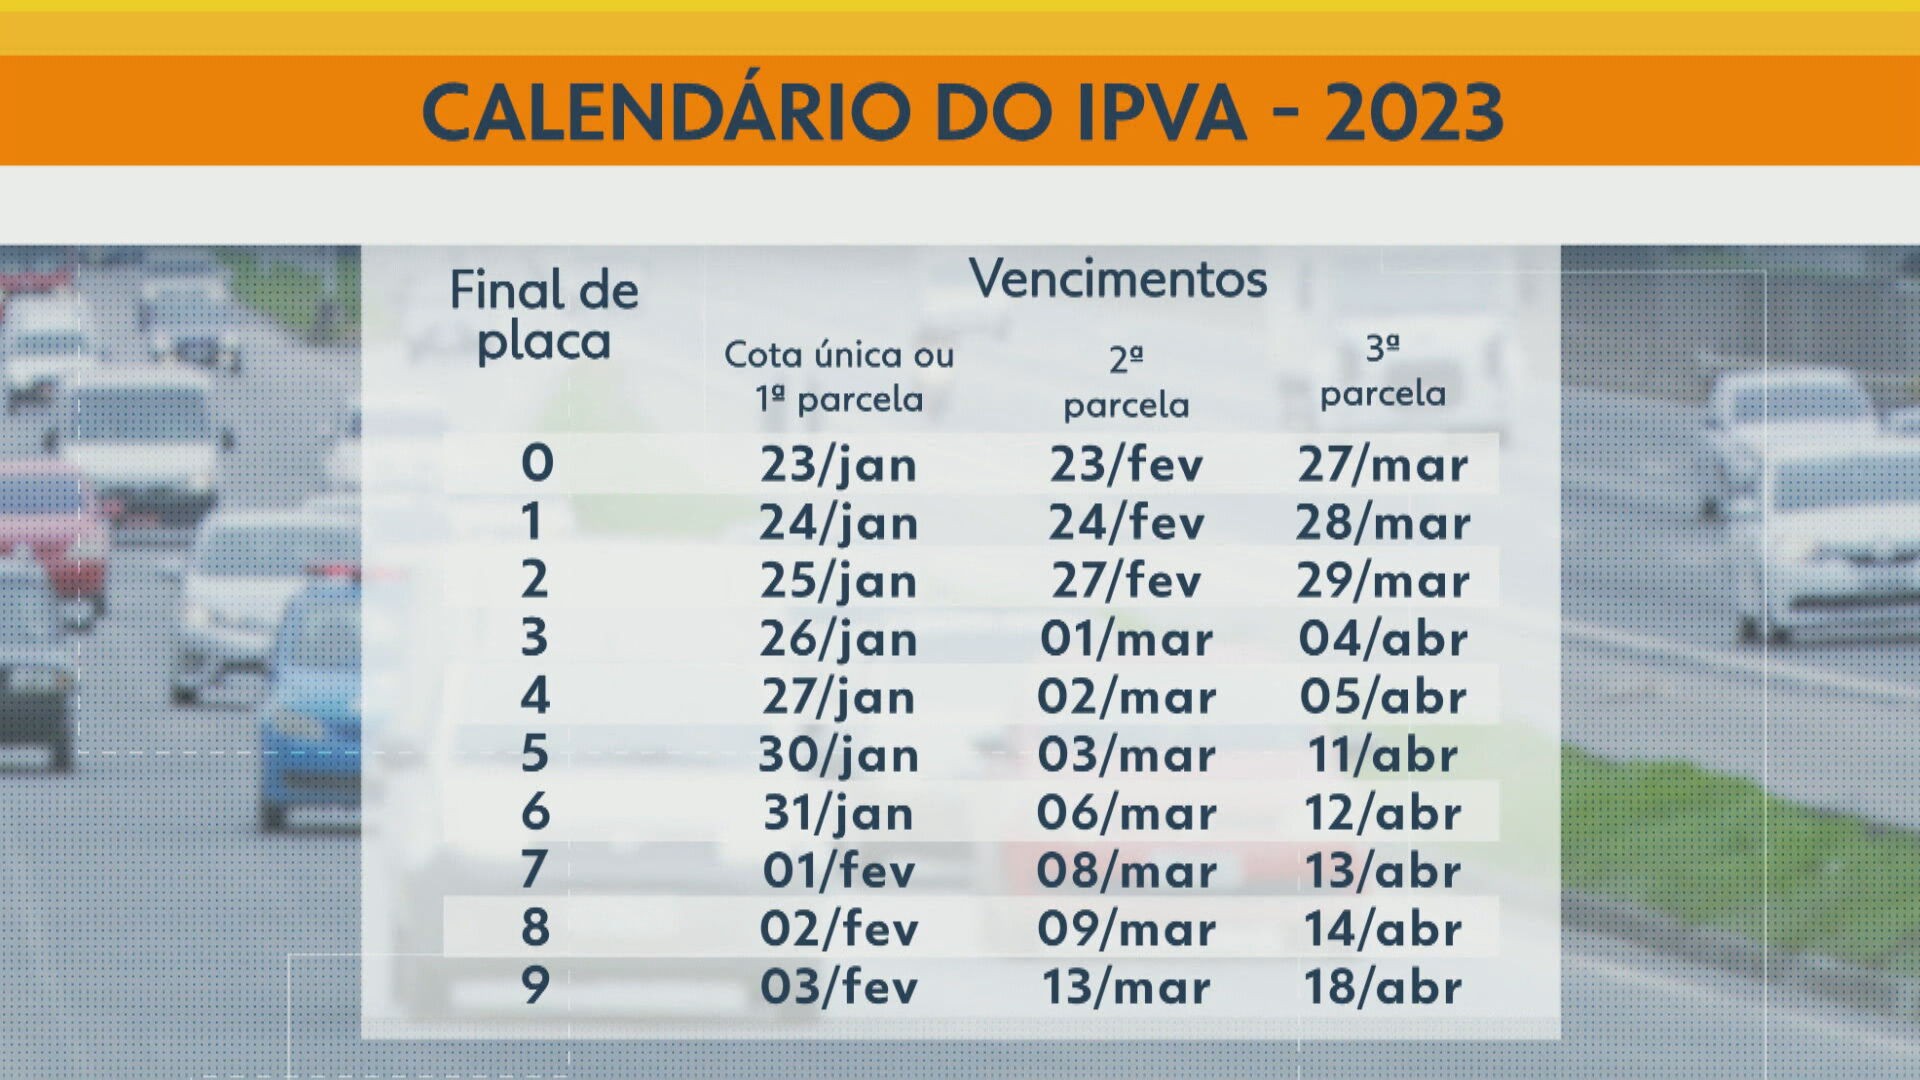 IPVA 2023 segunda parcela para veículos com placa final 0 vence nesta